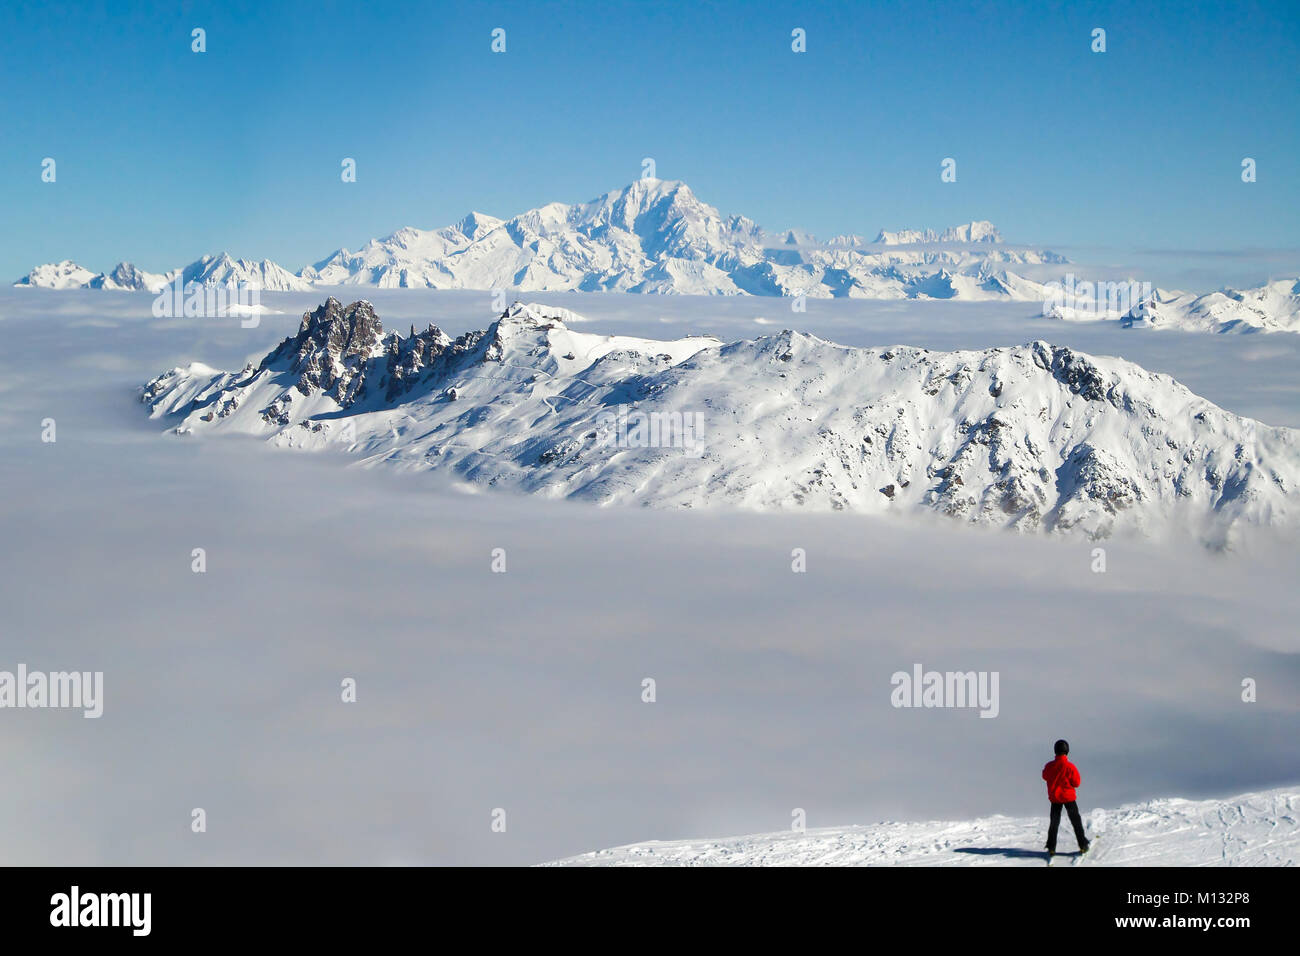 Le skieur Mont Blanc sur une mer de nuages, les Alpes, France Banque D'Images